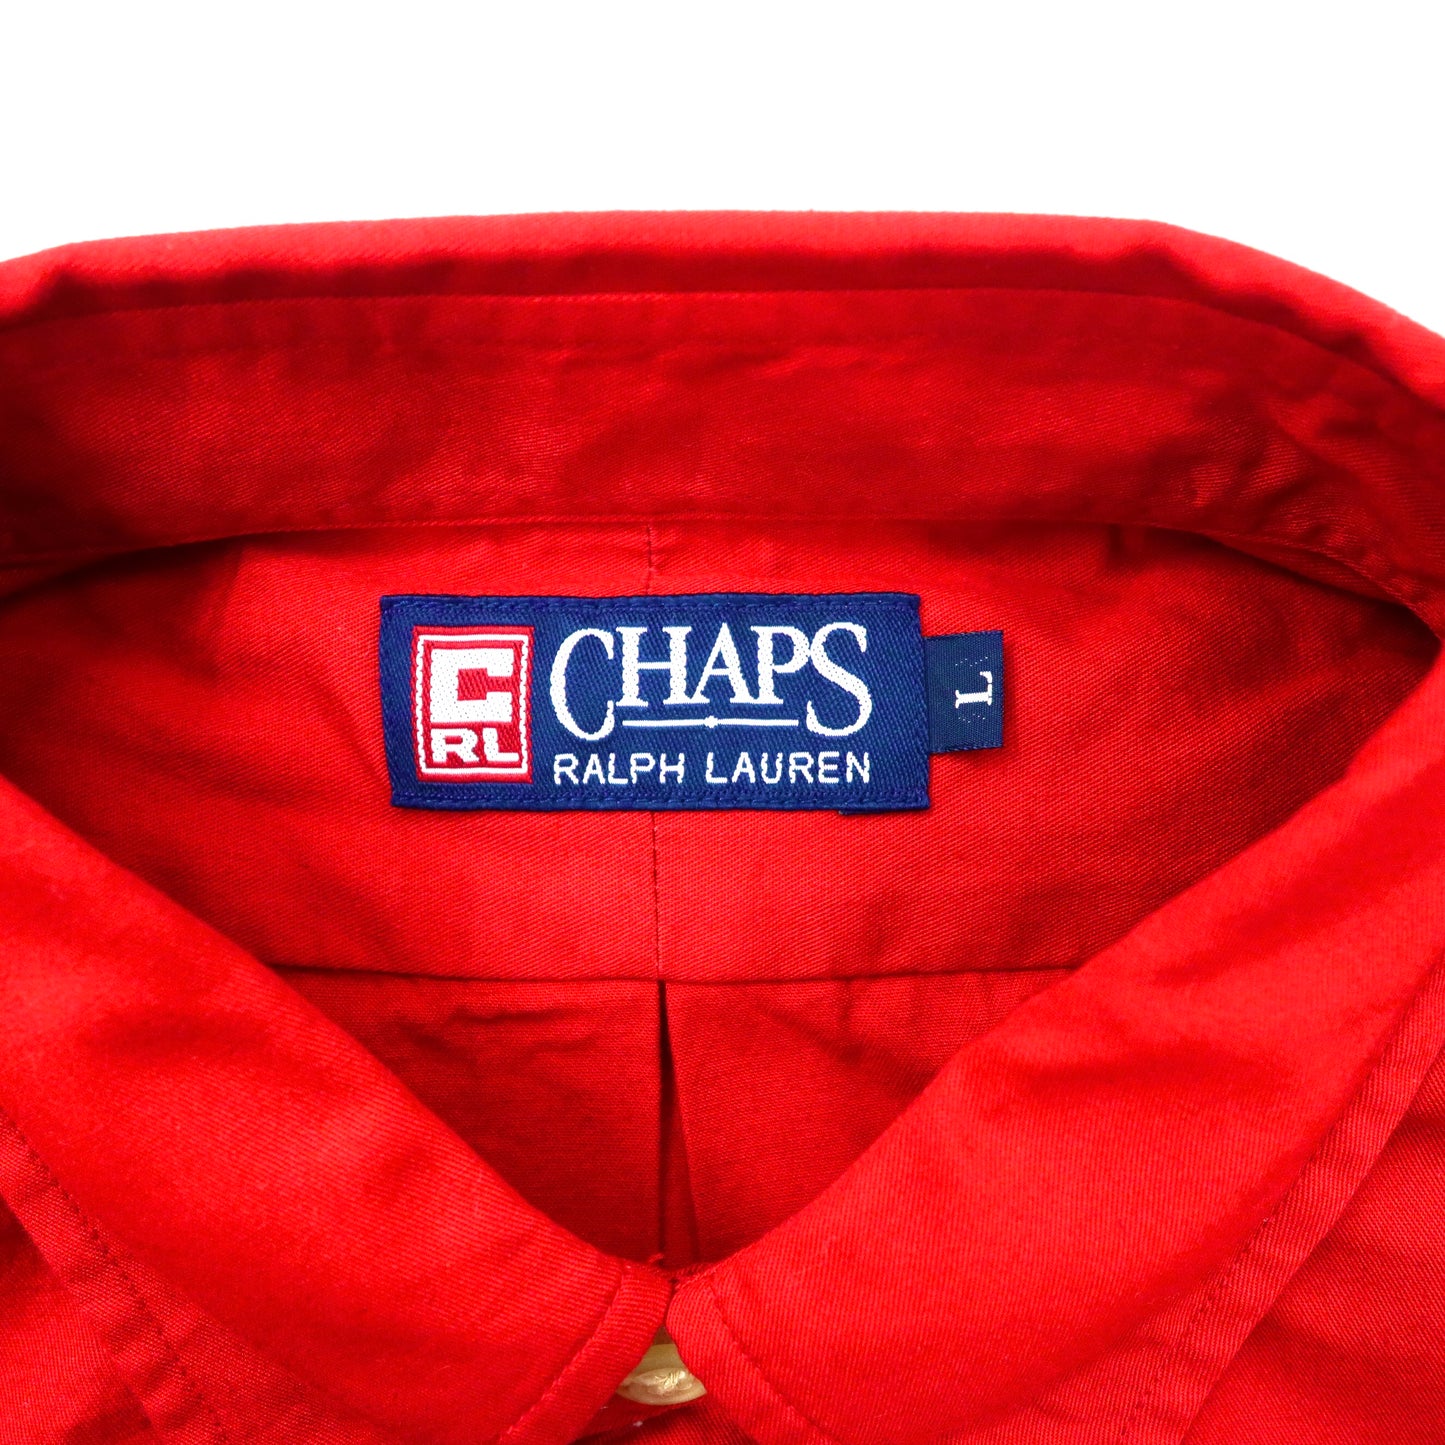 CHAPS RALPH LAUREN ボタンダウンシャツ L レッド コットン 未使用品